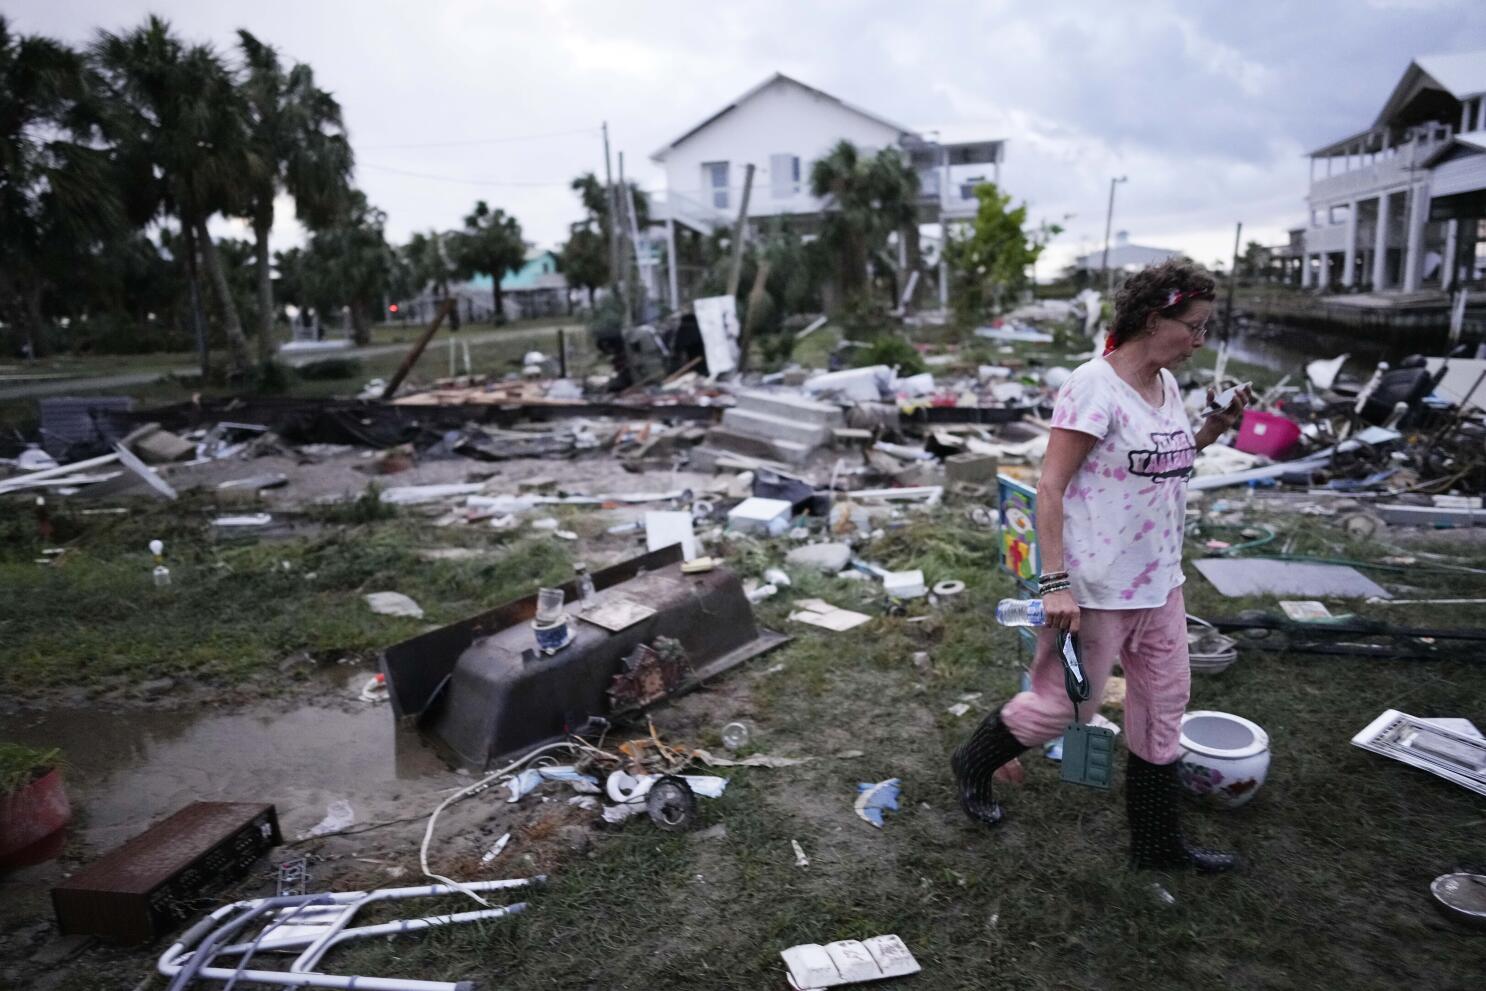 EEUU afronta una temporada de huracanes especialmente agitada